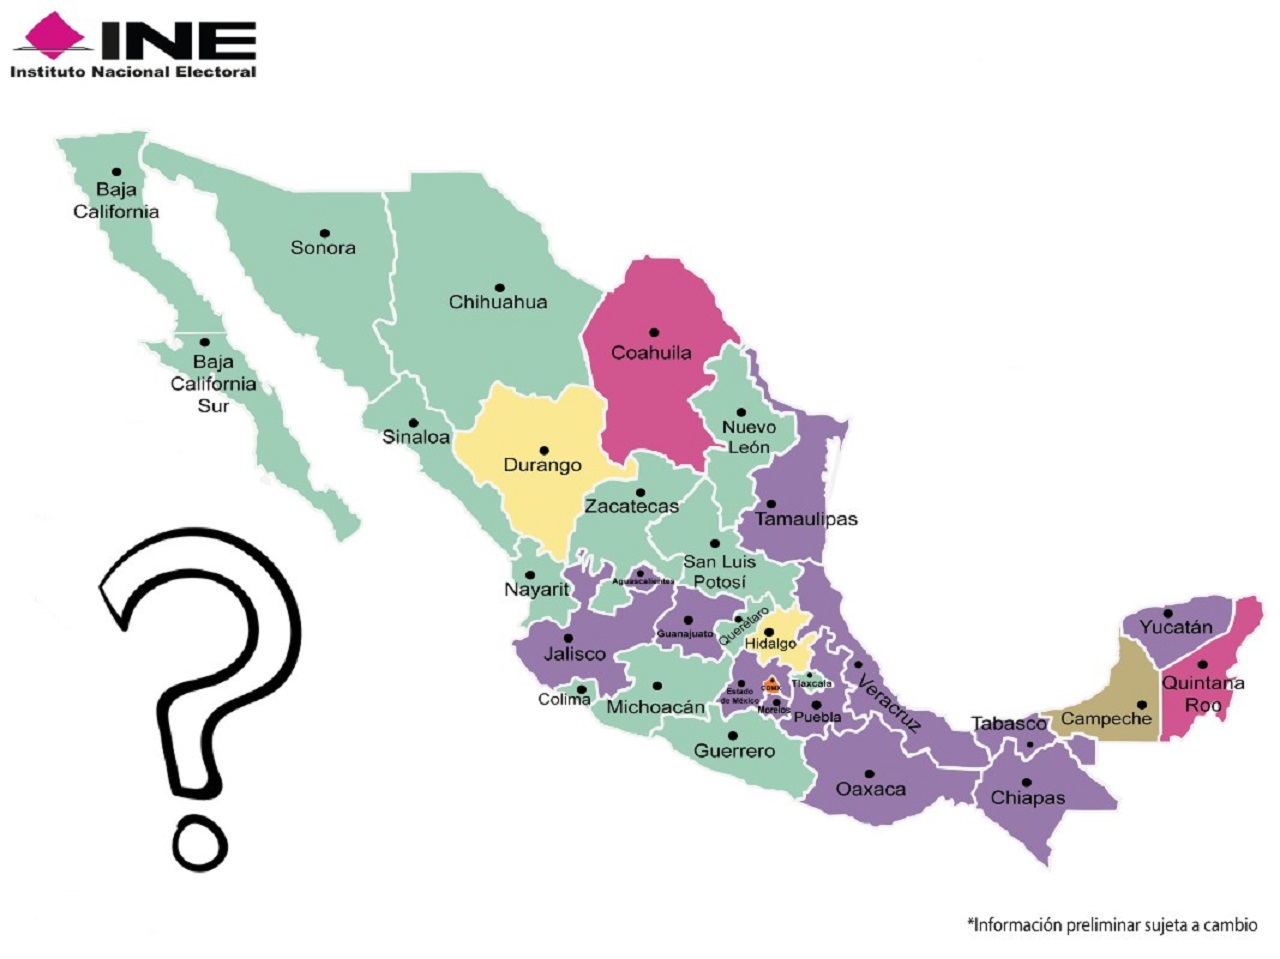 Los mexicanos en el extranjero podrán votar para elegir al próximo gobernador de Baja California Sur en las elecciones en México este 2021. | Imagen: INE.